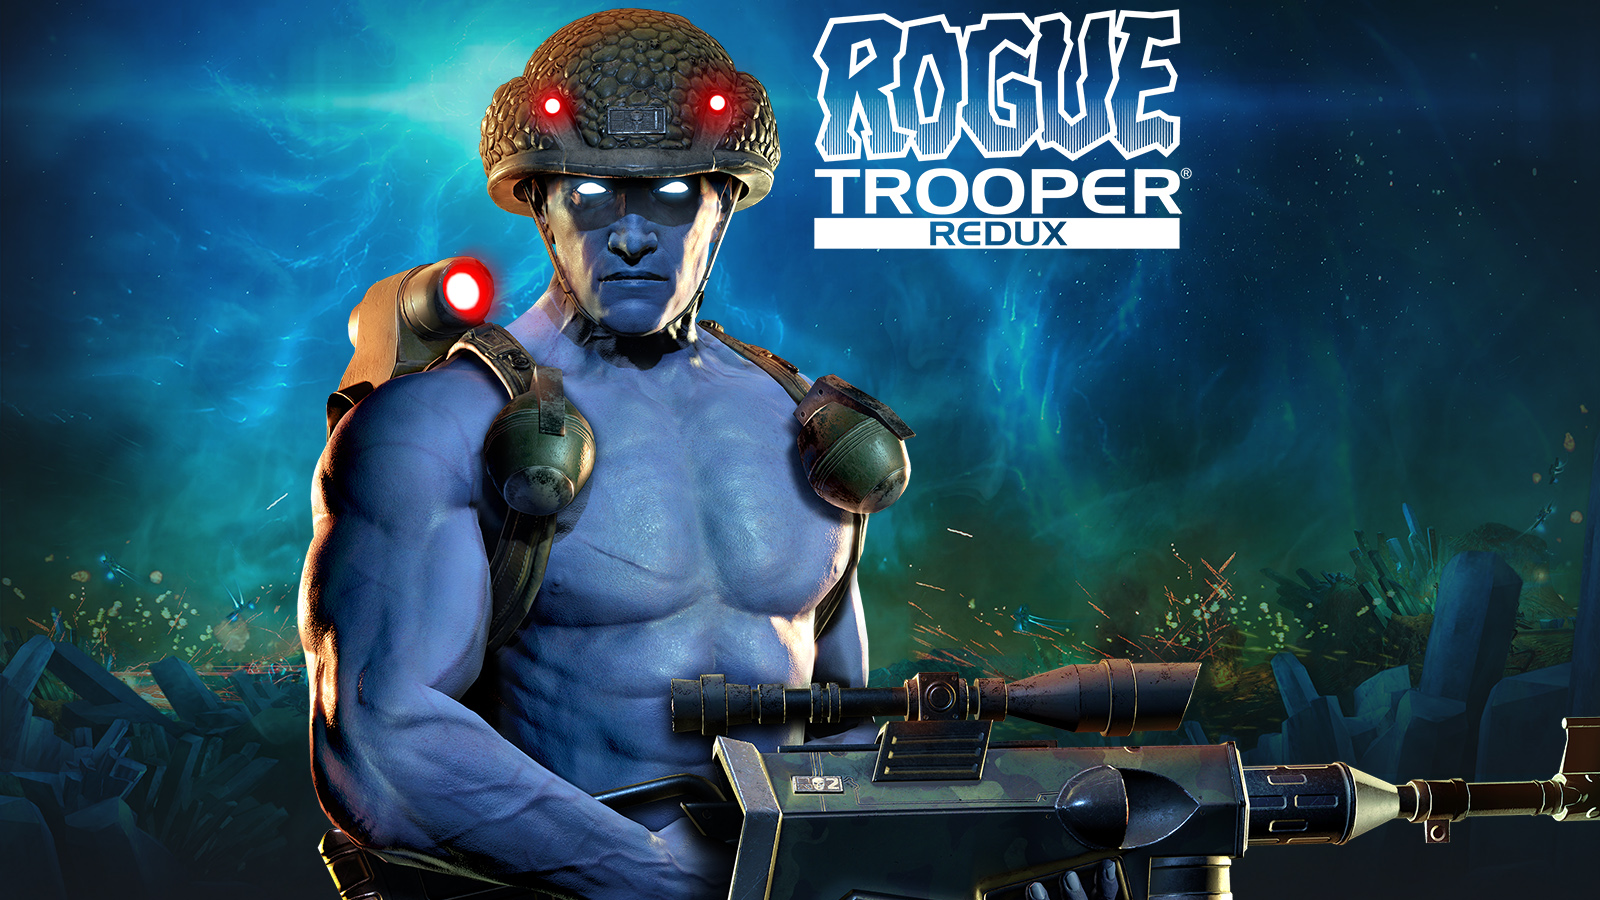 Rogue Trooper (игра, 2006). Rogue Trooper Redux (Xbox). Оружие Rogue Trooper. Игра Rogue Trooper Redux. Trooper redux